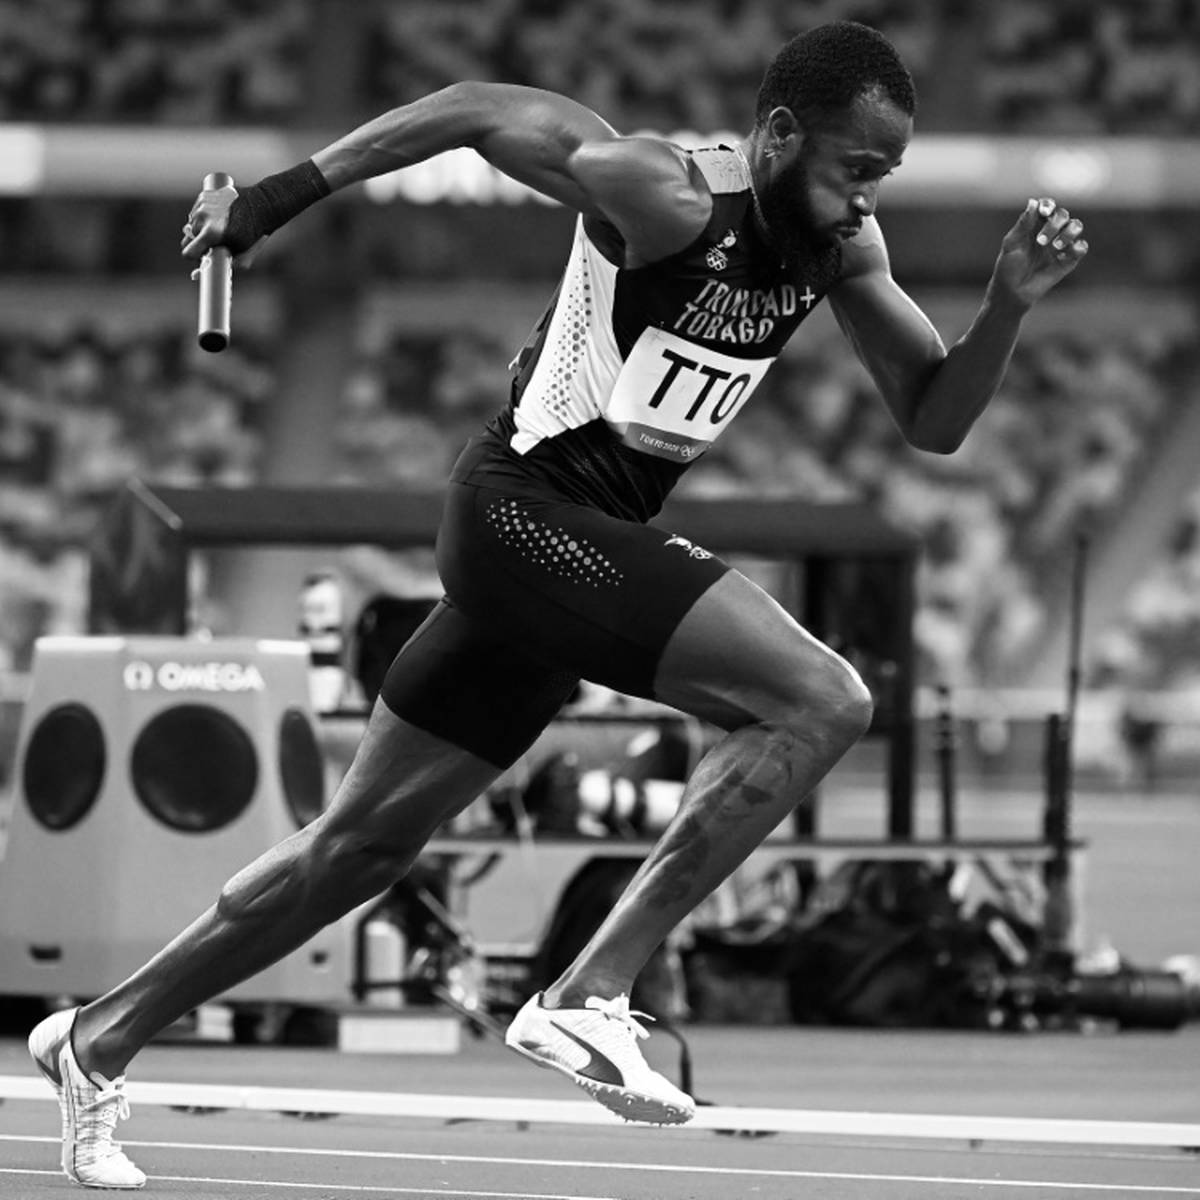 Die Leichtathletik trauert um Deon Lendore: Der 400-m-Sprinter aus Trinidad und Tobago ist im Alter von 29 Jahren verstorben.